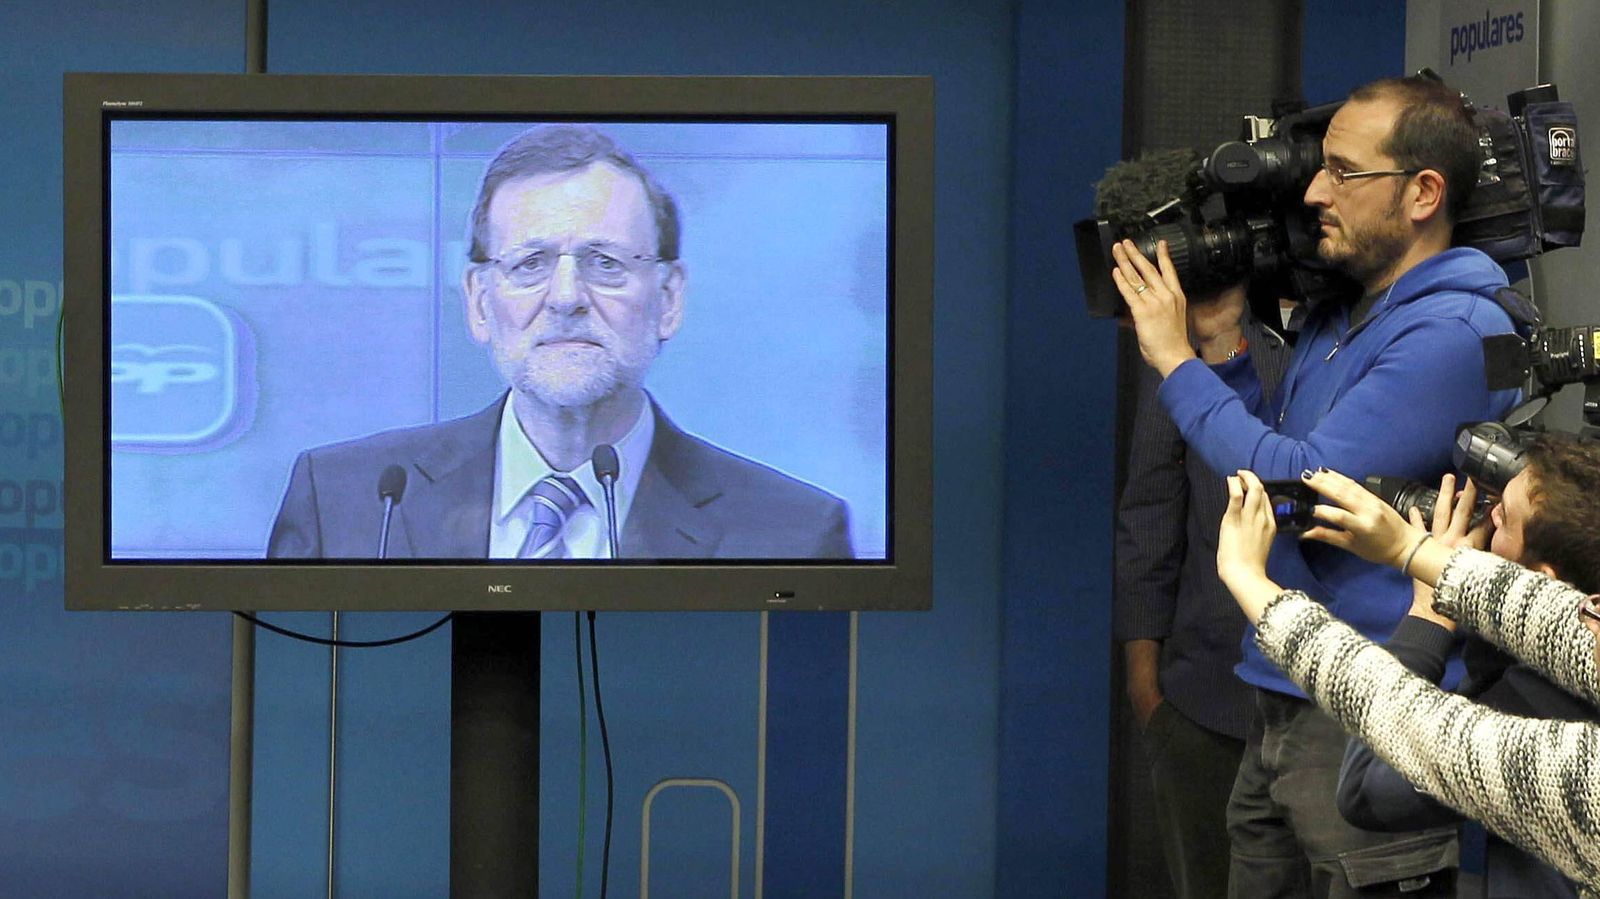 Foto: Los cámaras de los medios graban un monitor de la sala de prensa del PP tras ser informados de que la intervención de Rajoy sería solo a través de la pantalla de plasma y sin responder a las preguntas de los periodistas. EFE